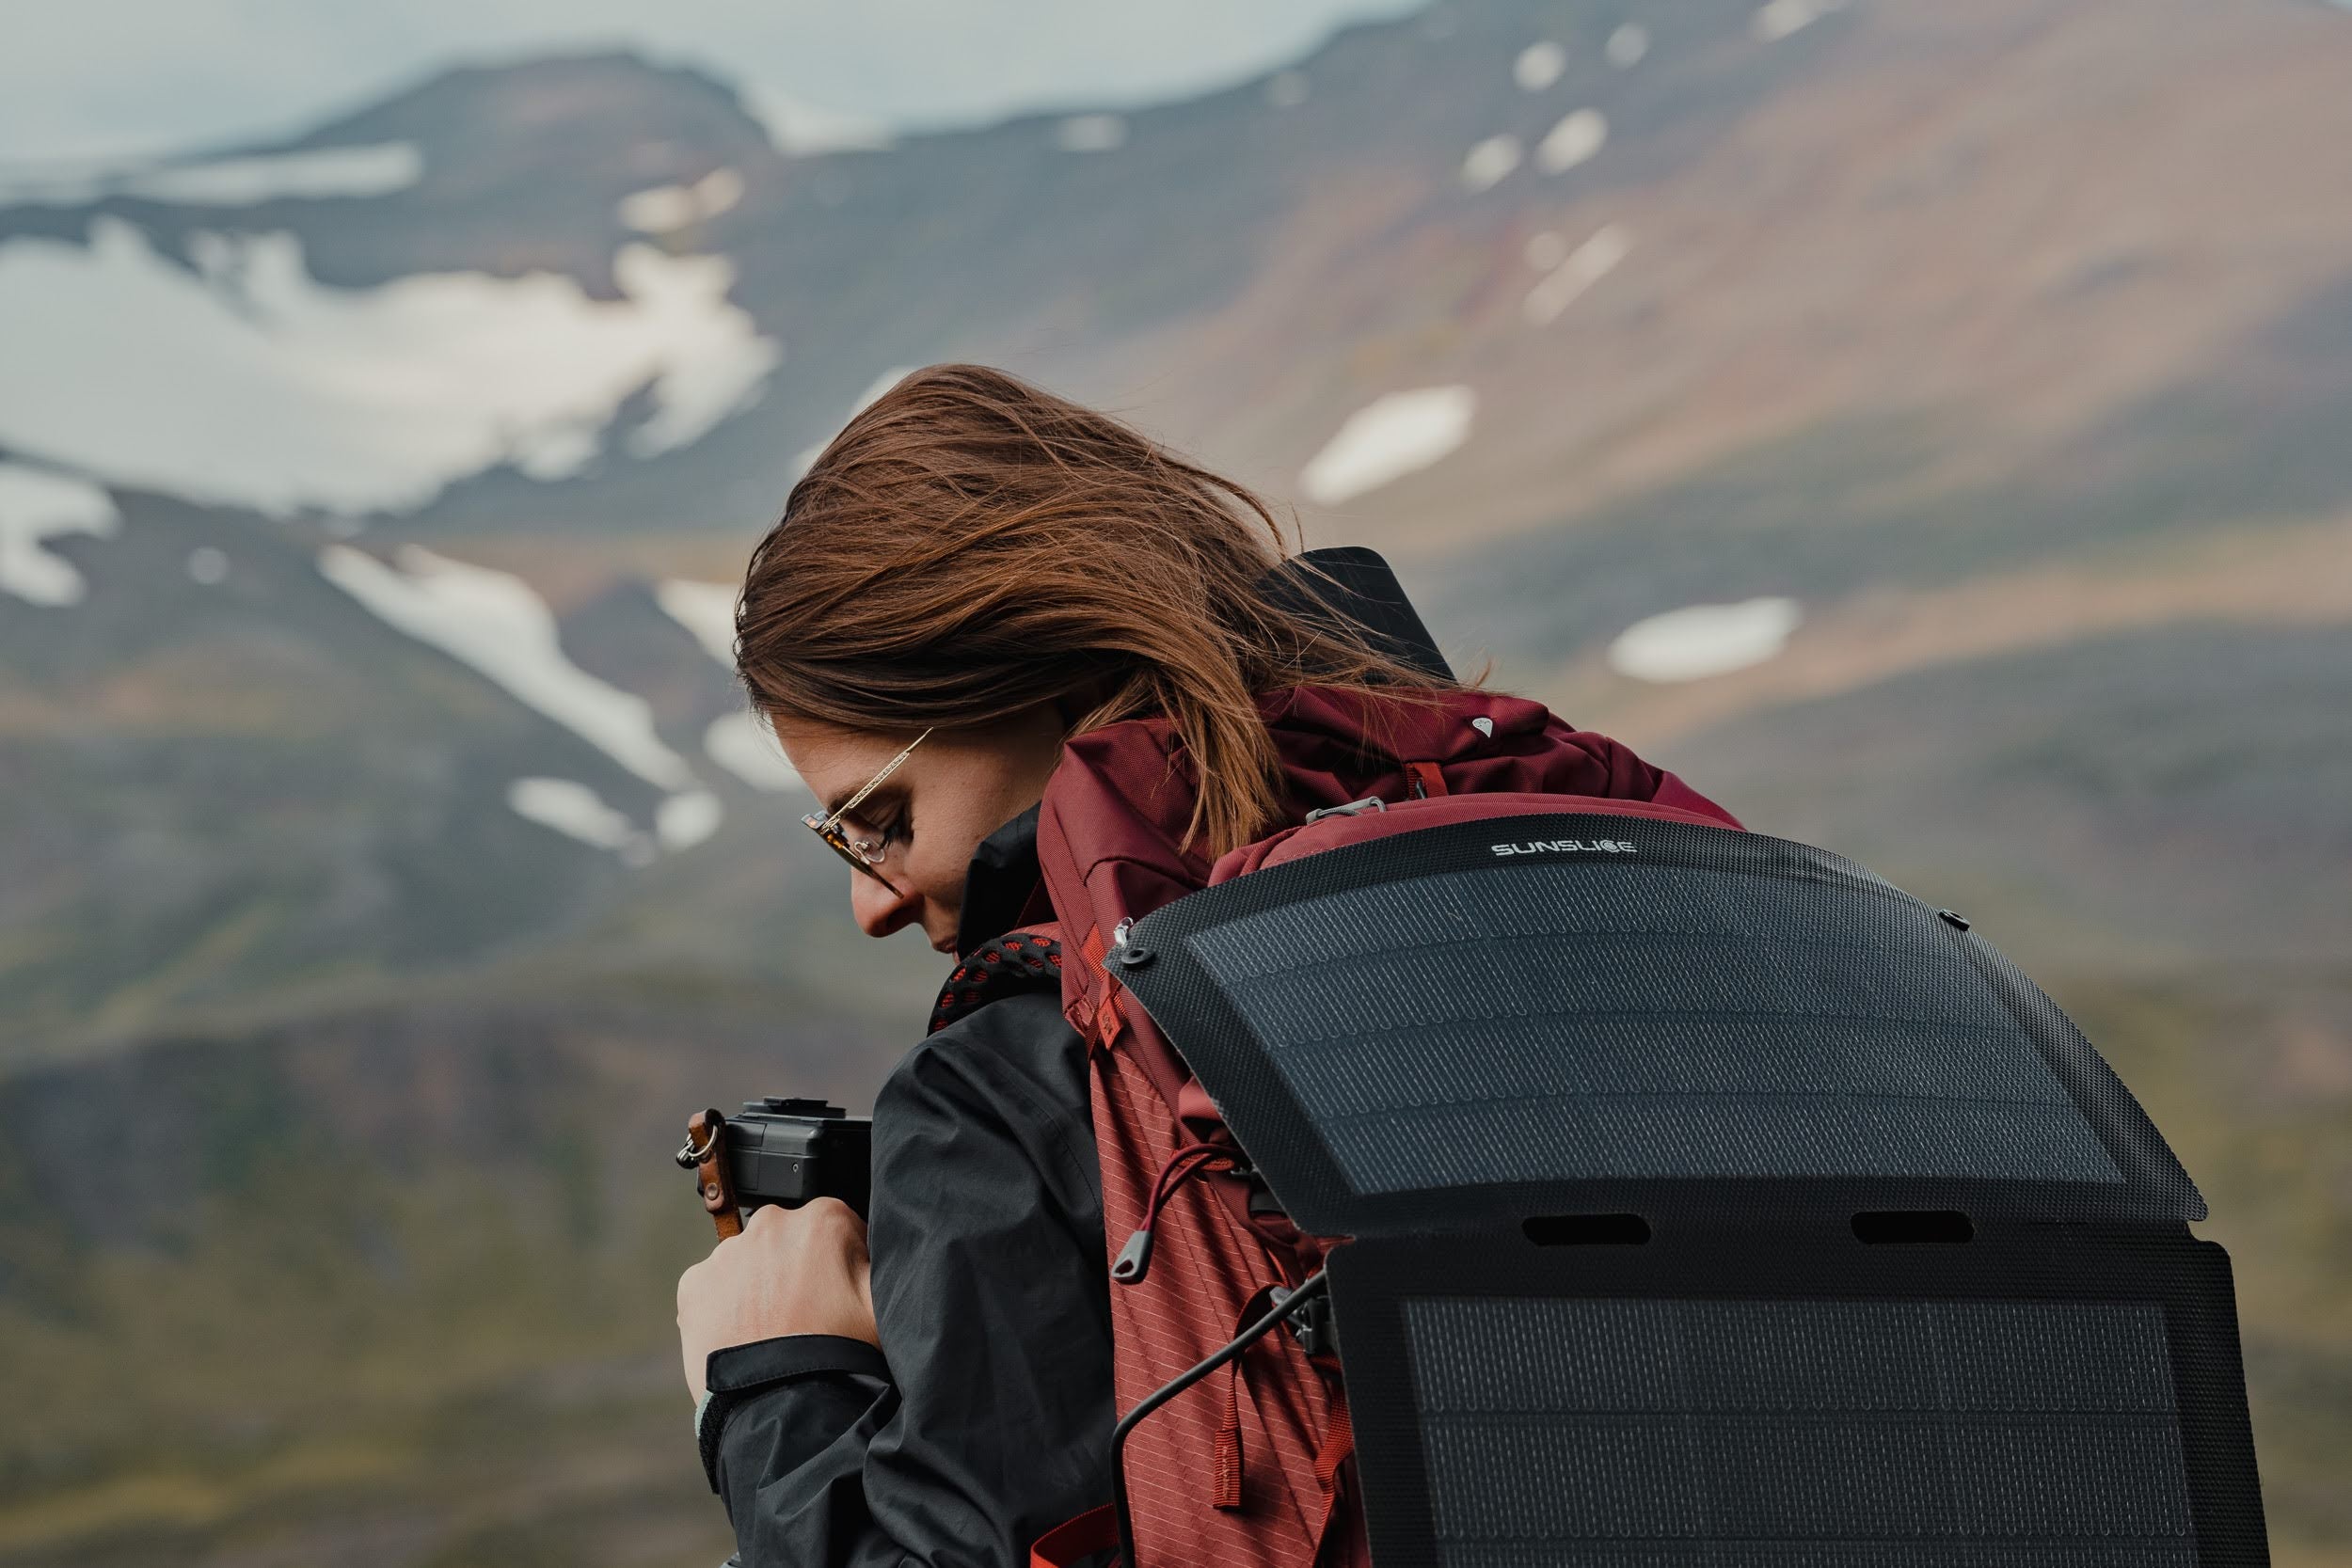 femme au sommet d'une montagne enneigée, appareil photo à la main et panneau solaire pliable attaché à son sac à dos